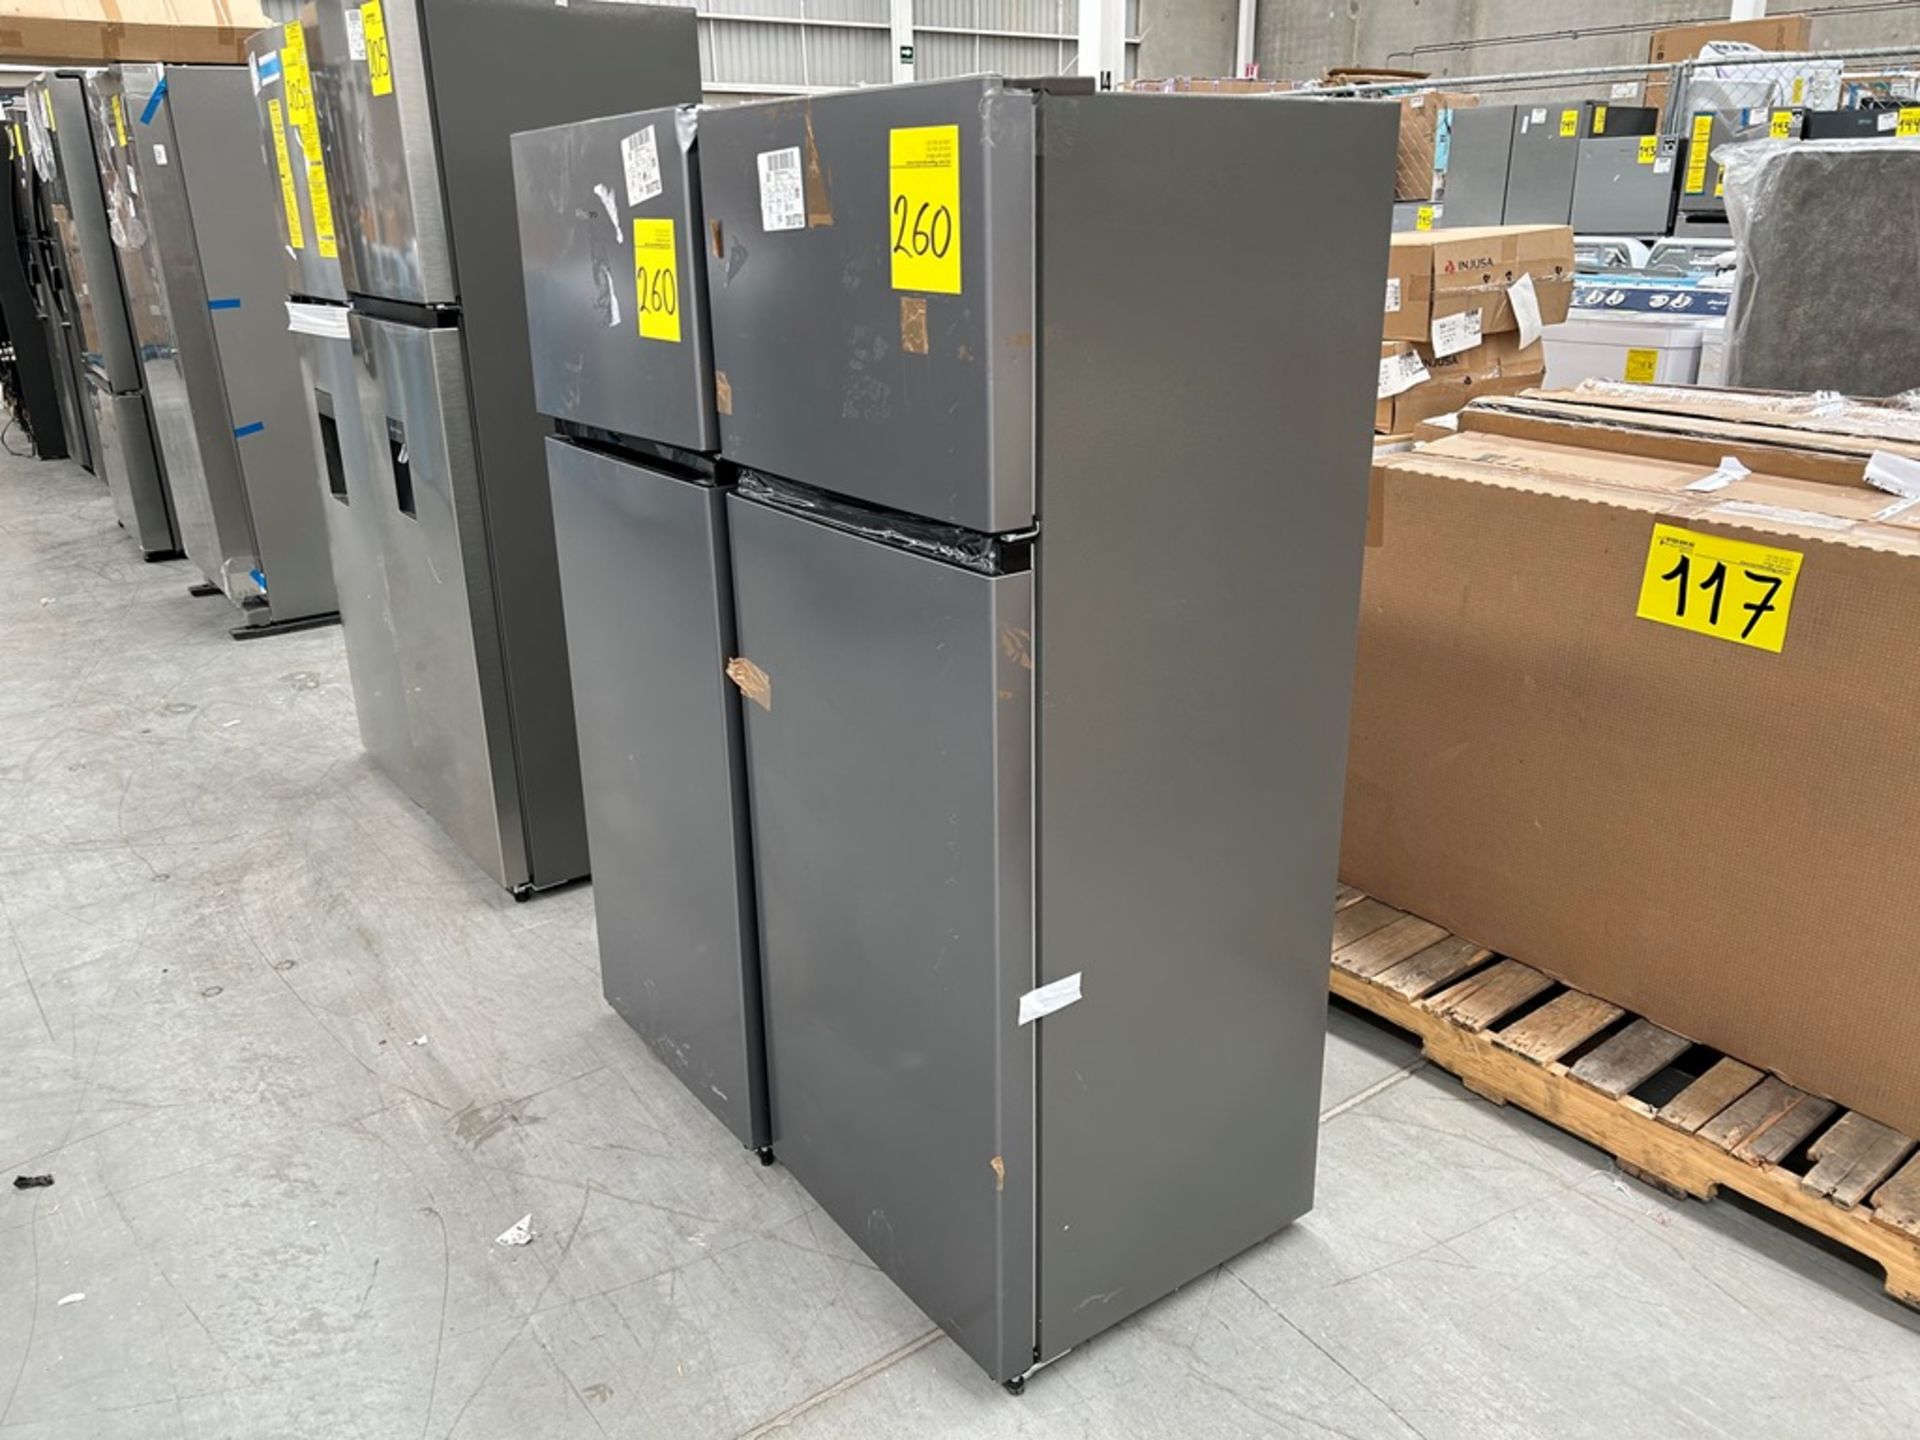 2 refrigeradores contiene: 1 refrigerador Marca HISENSE, Modelo RT80D6AGX, Color NEGRO; 1 refrigera - Image 3 of 8